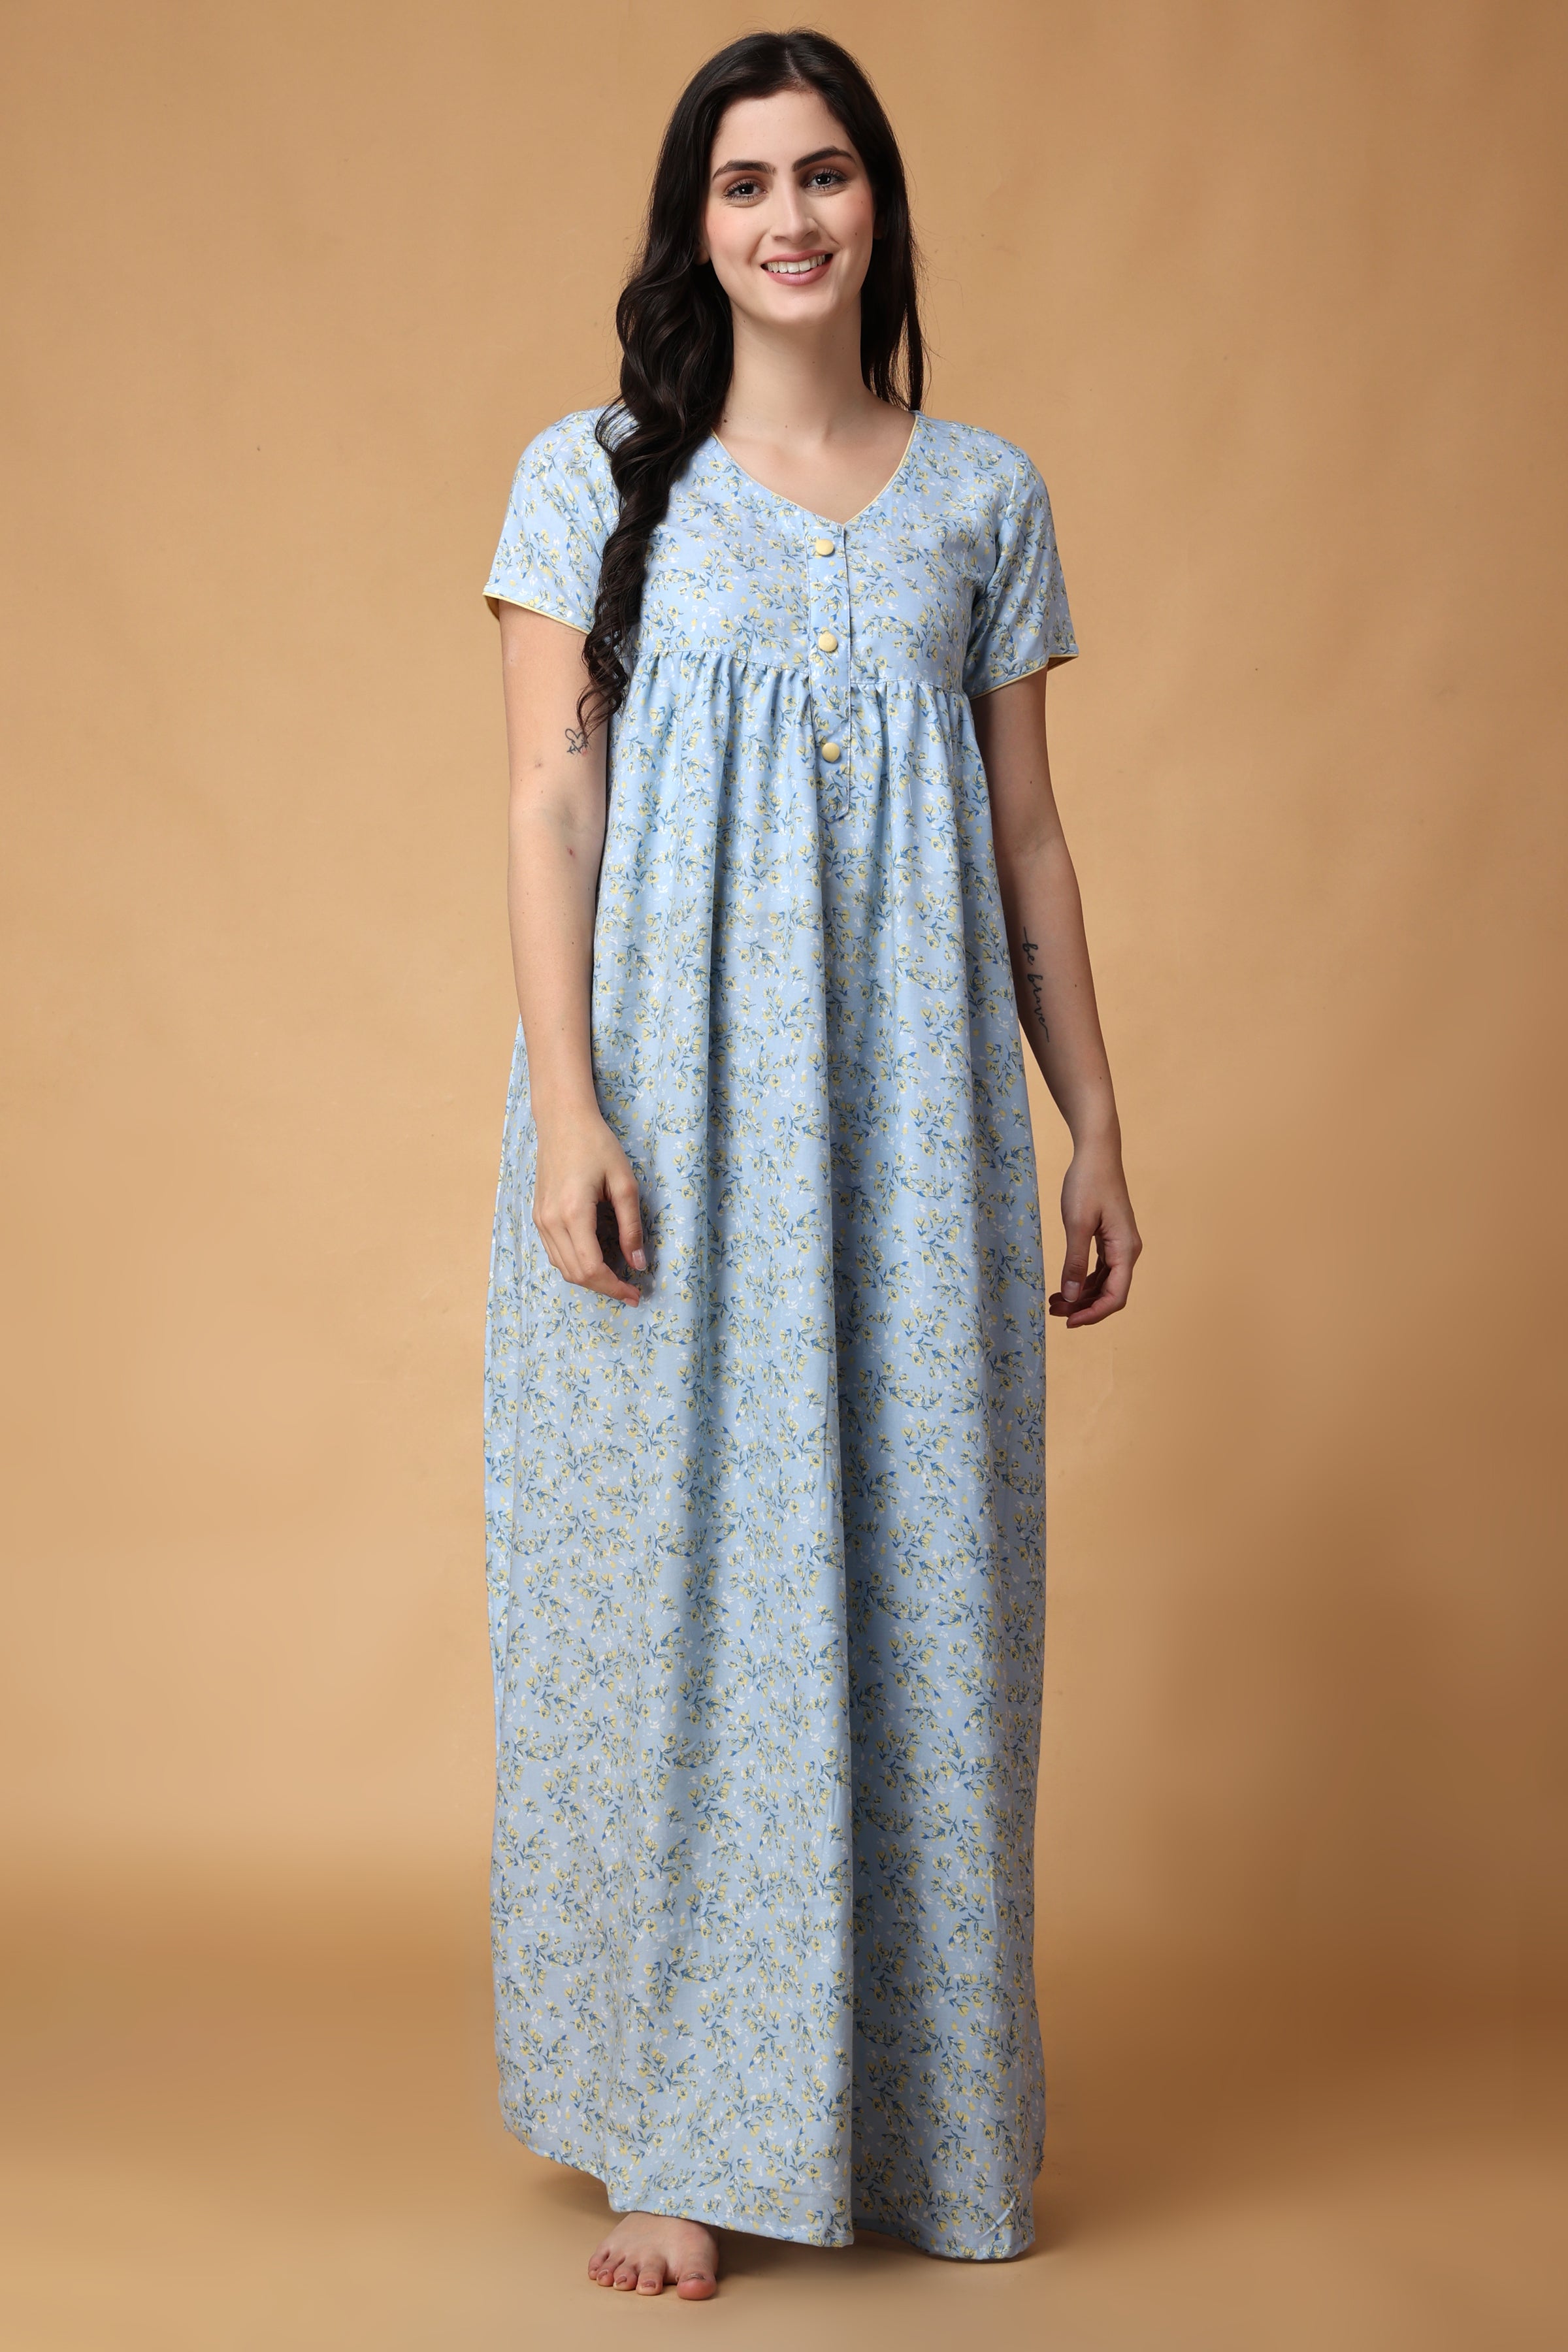 Victorian Nightgown Vintage Sleepwear 1900s Nightwear Old - Etsy | Night  gown, Night dress, Victorian nightgown